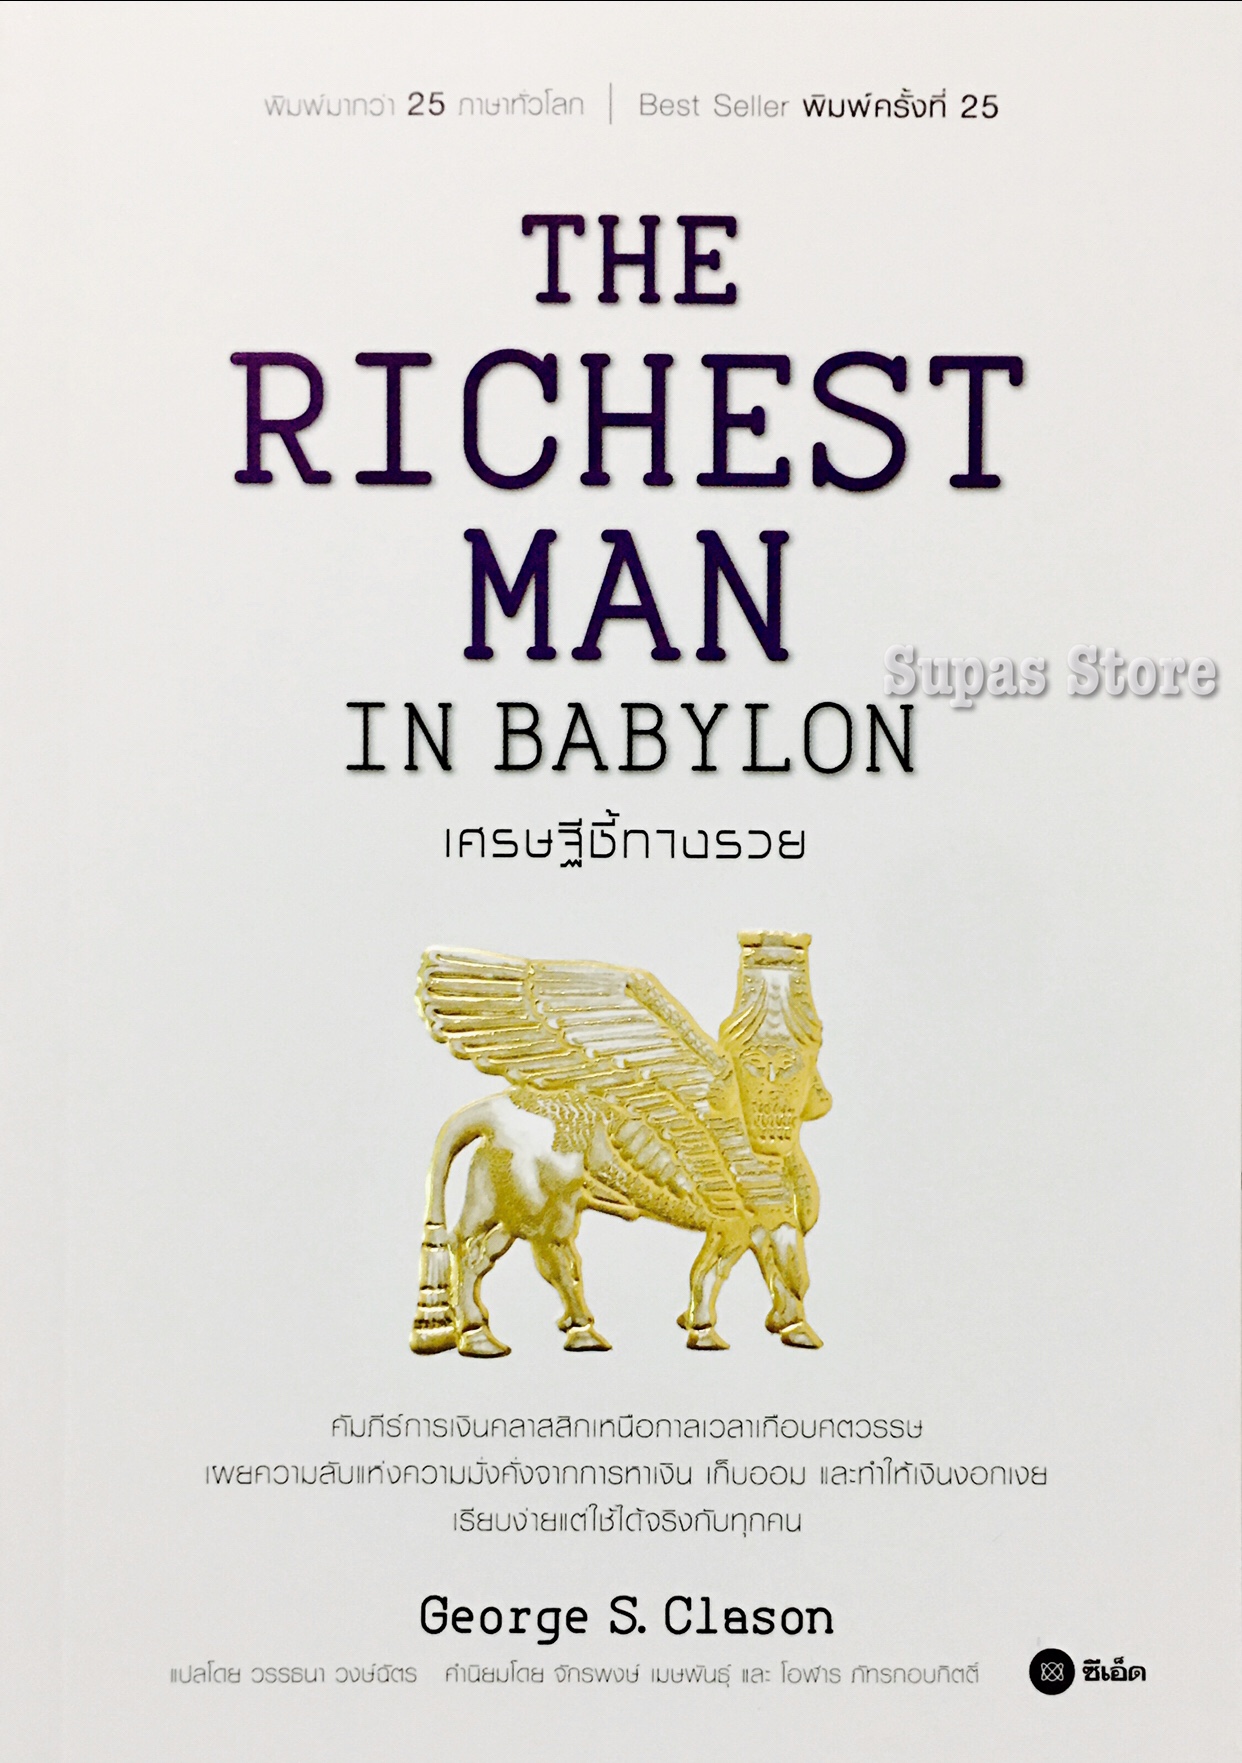 THE RICHEST MAN IN BABYLON เศรษฐีชี้ทางรวย